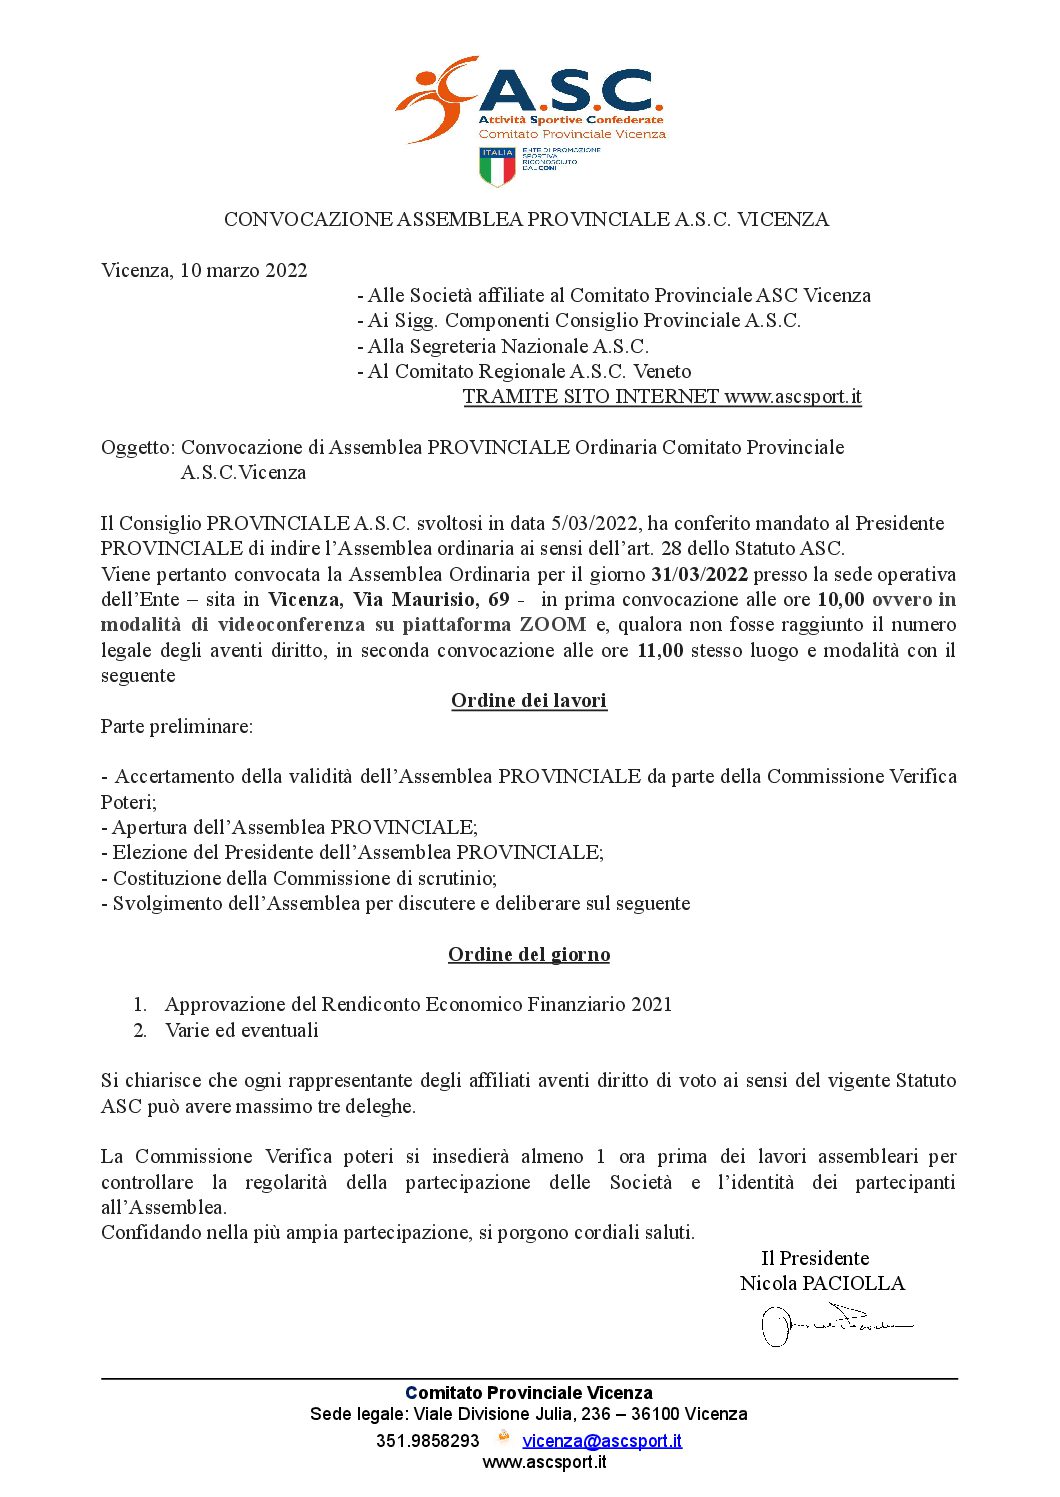 convocazione assemblea provinciale Vicenza marzo 2022